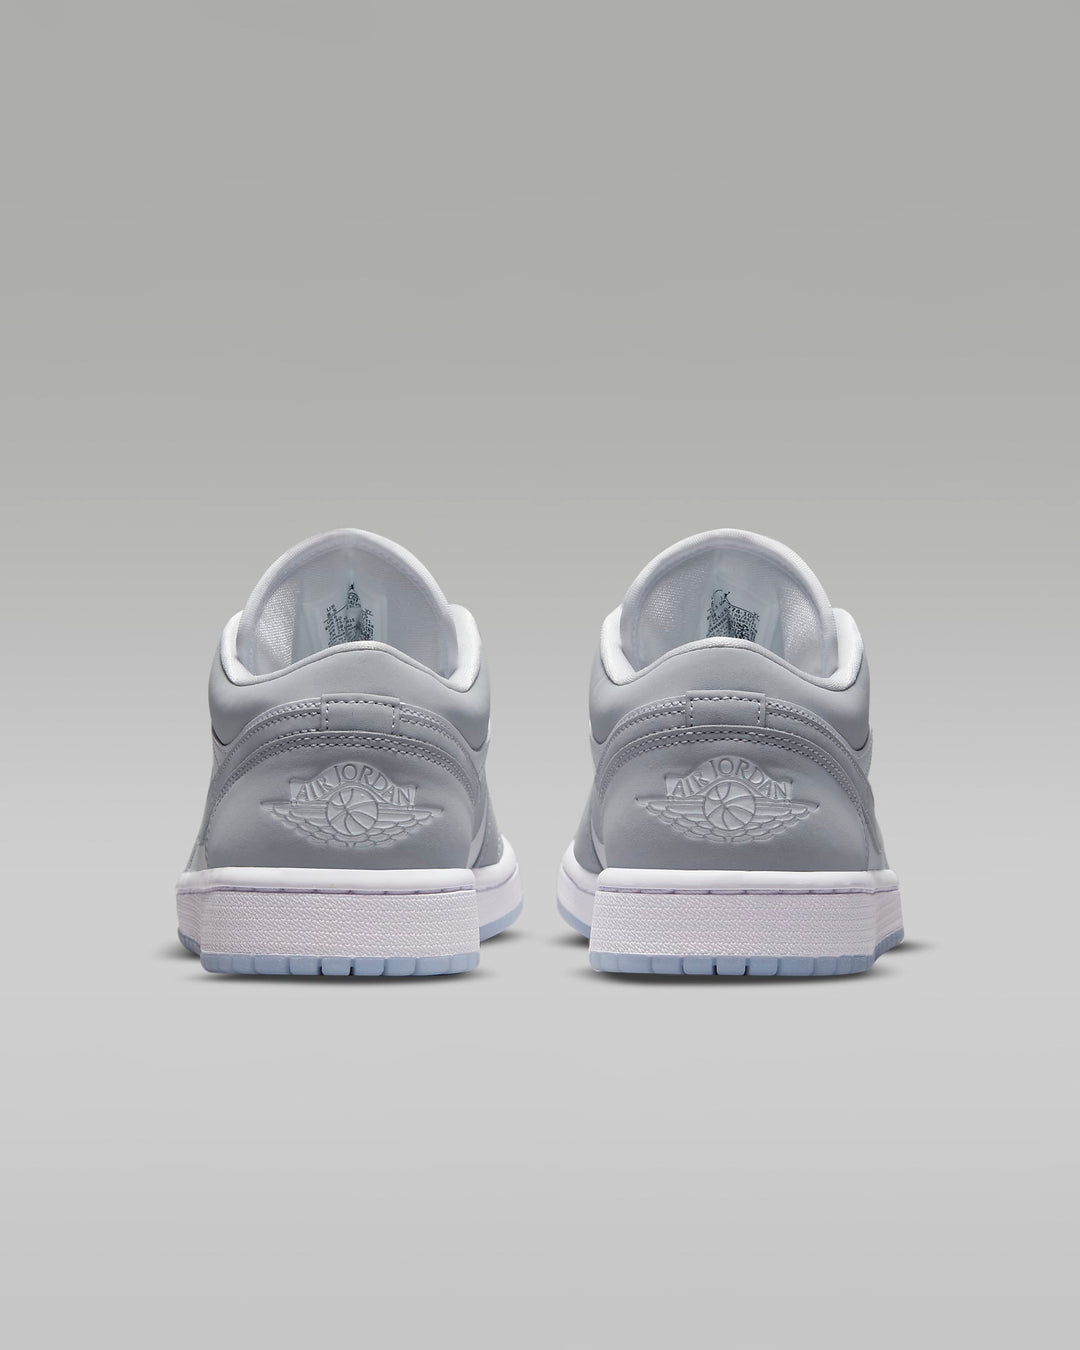 Giày Nike Air Jordan 1 Low Women Shoes #Aluminium - Kallos Vietnam